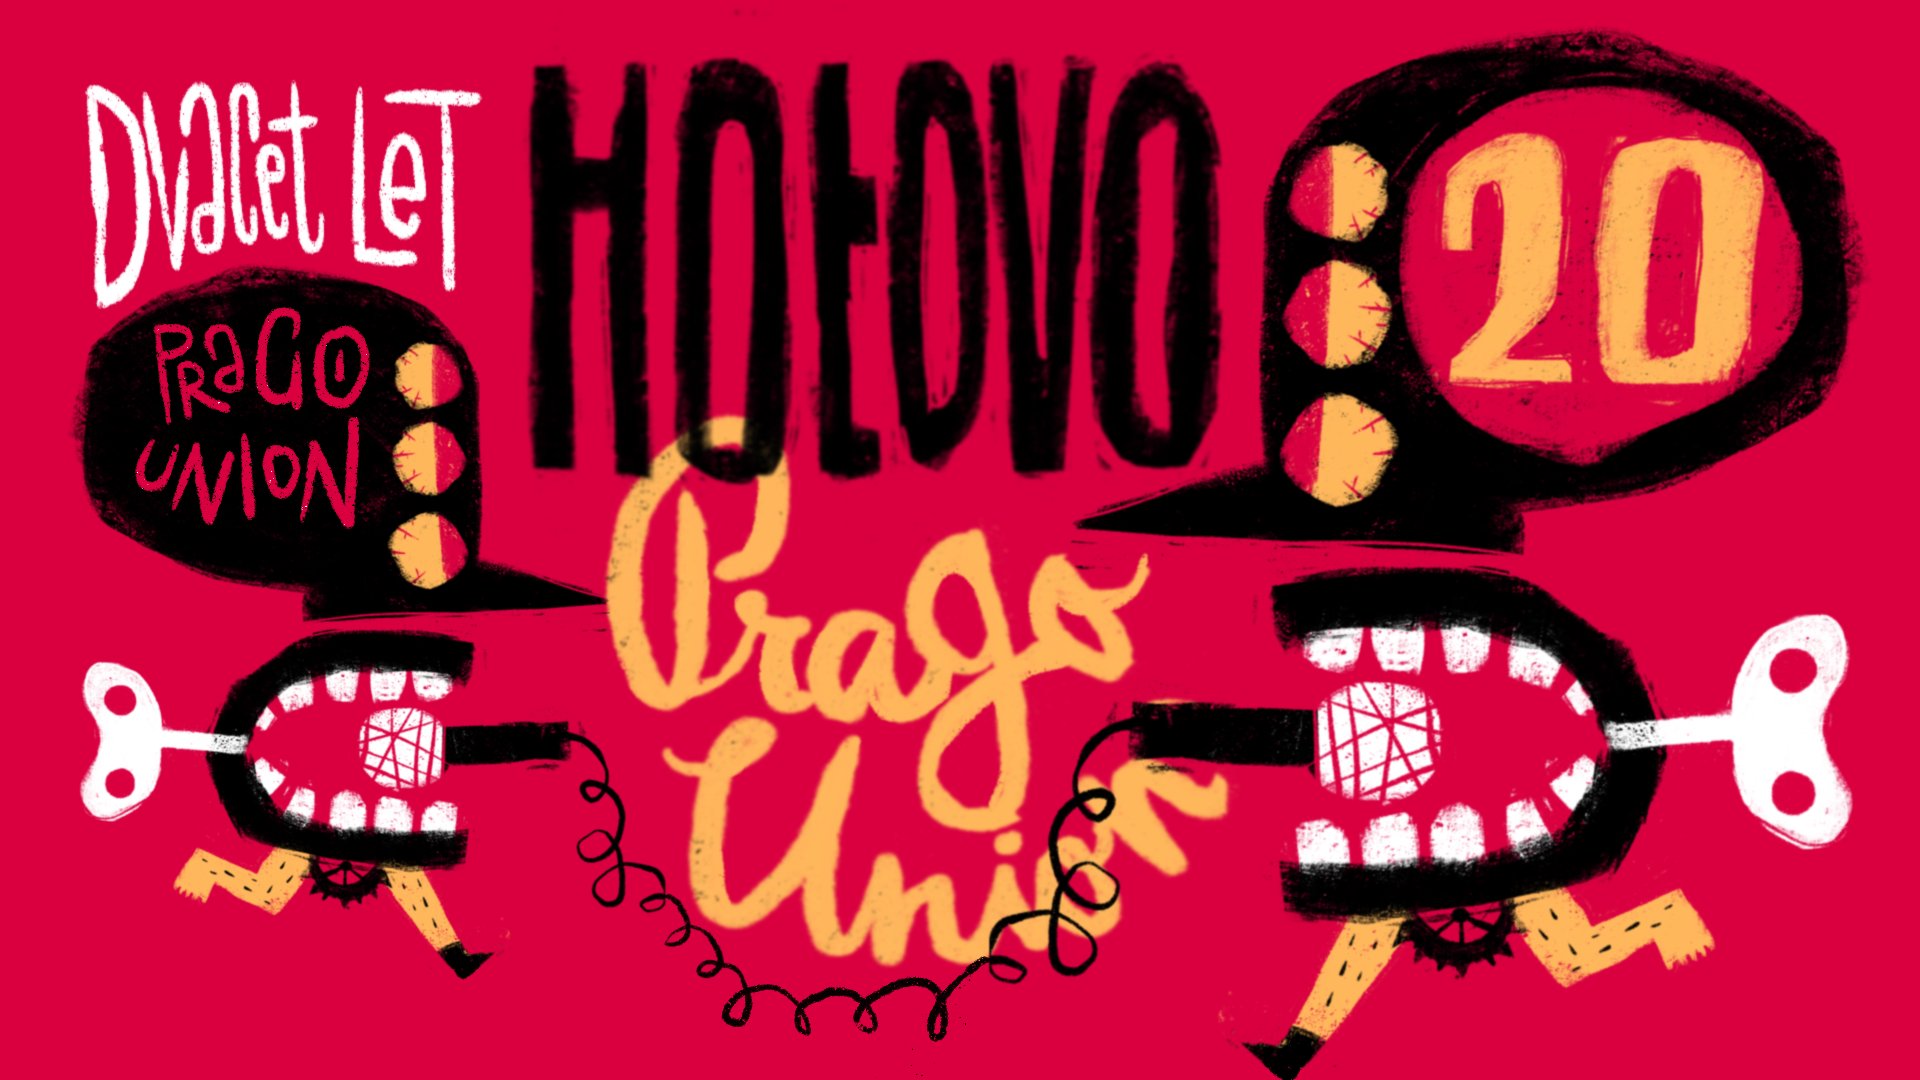 Prago Union Hotovo 20 Tour